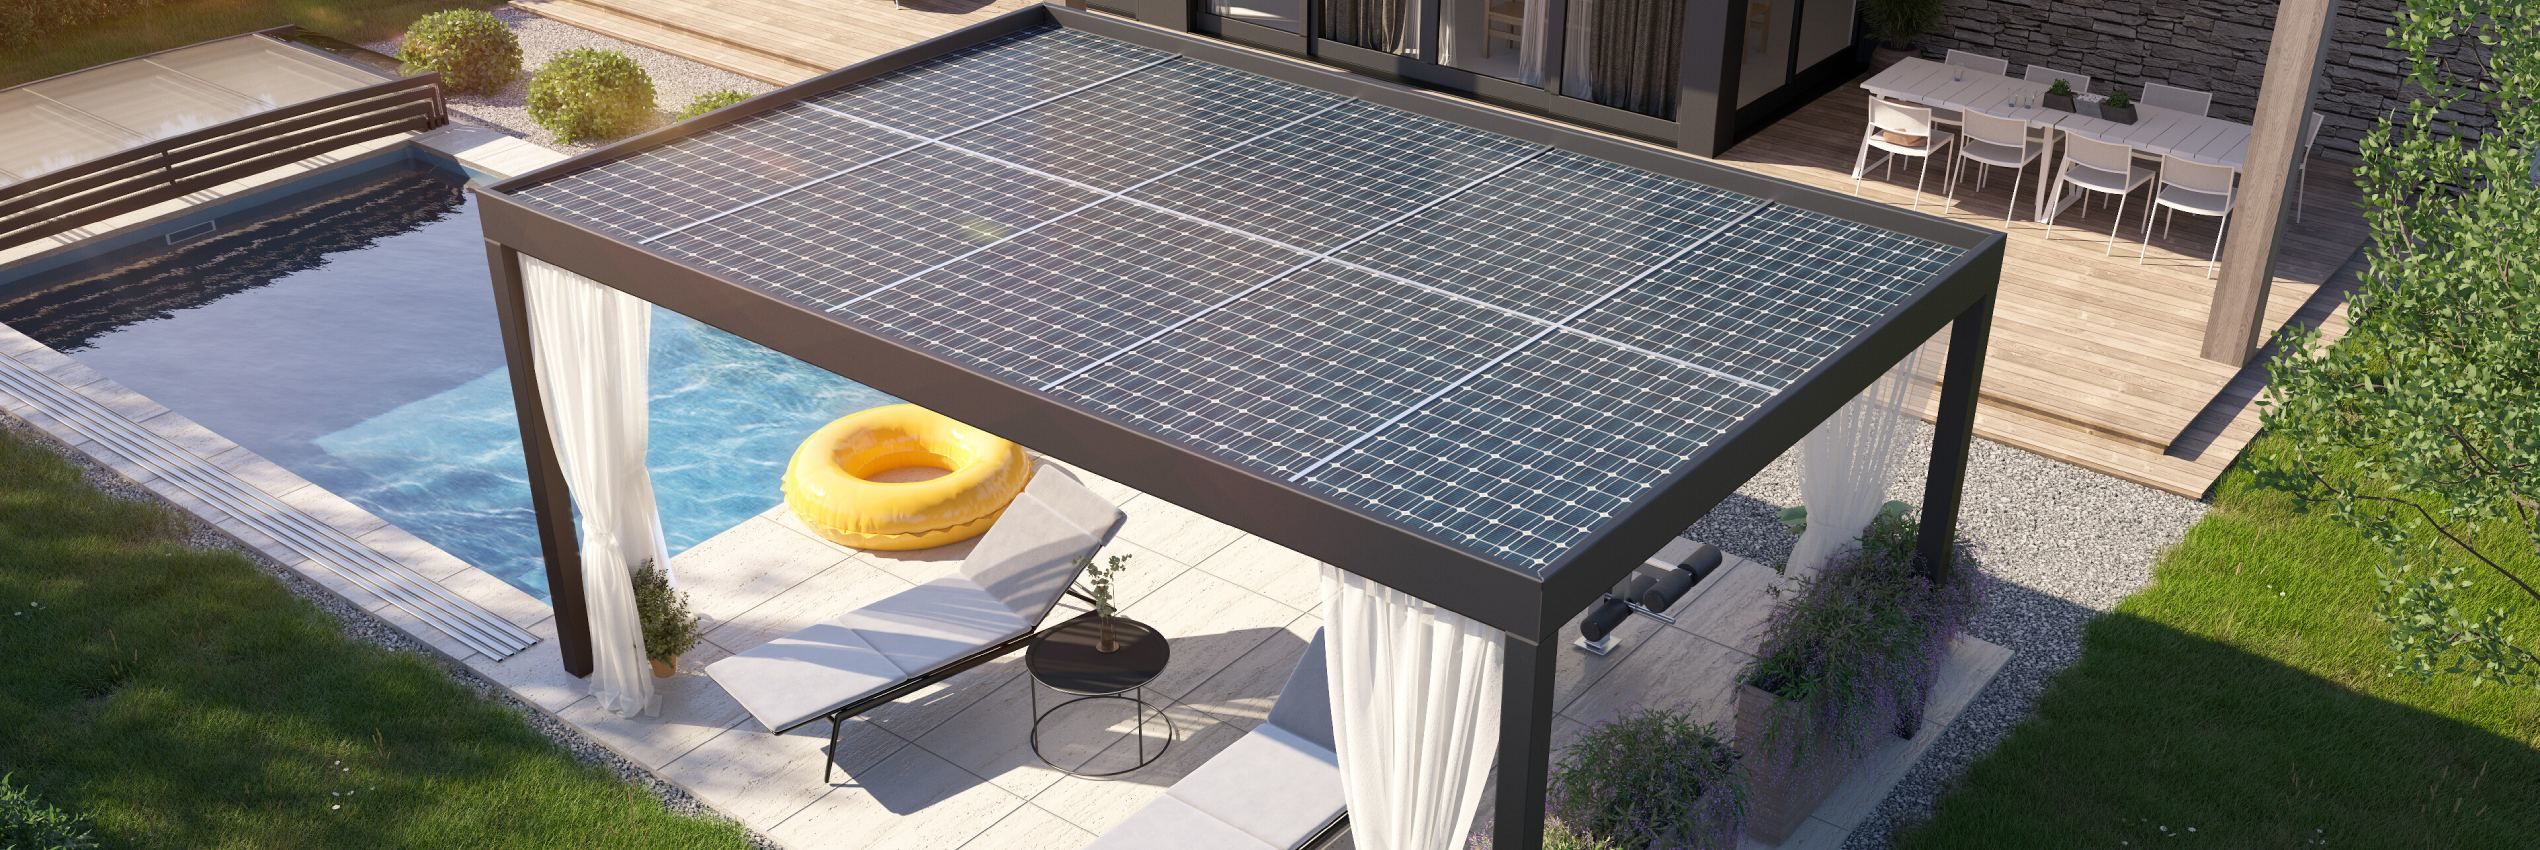 Pergola Solar autonomní zdroj energie pro bazén